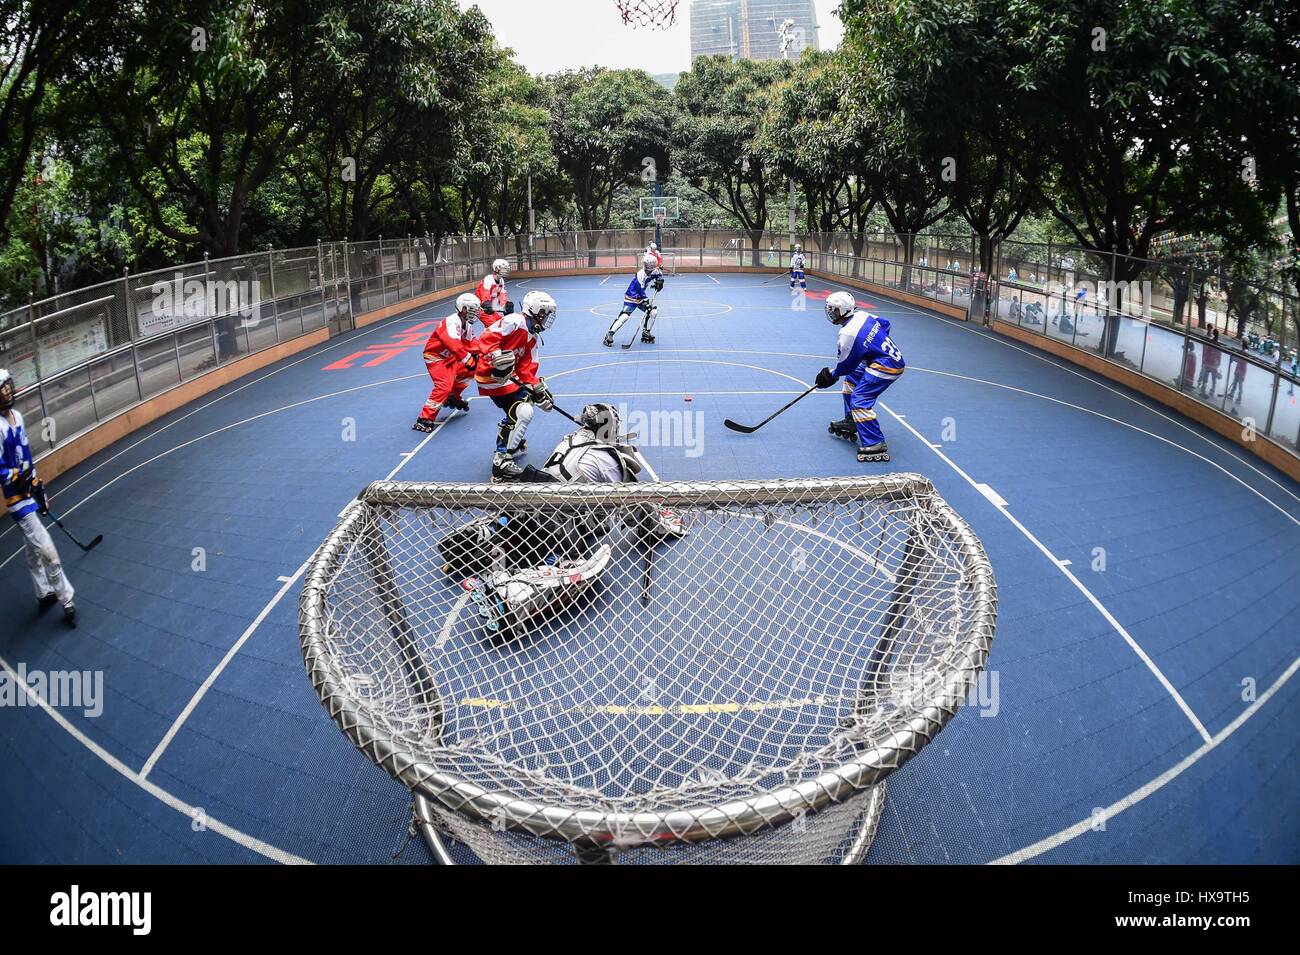 (170326)--GUANGZHOU, 26. März 2017 (Xinhua)--Spieler Inline-Hockey-Mannschaft aus Guangzhou Nr. 41 Mittelschule besuchen eine Trainingseinheit in eine Eisbahn in Guangzhou, Hauptstadt der südchinesischen Provinz Guangdong, am 16. März 2017. Guangzhou-Nr. 41-Mittelschule hat 3 Roller Eislaufplätze und kaufte einige Gänge der Inline-Hockey in den letzten Jahren gebaut.       Wenn für das Jahr 2022 Olympischen Winterspiele, China soll 300 Millionen Menschen im Land zur Teilnahme an Wintersport, einschließlich der im Süden lebenden ermutigen und Westchina bieten. Guangdong Teilnahme an etwa 400.000 Menschen-Zeiten Stockfoto